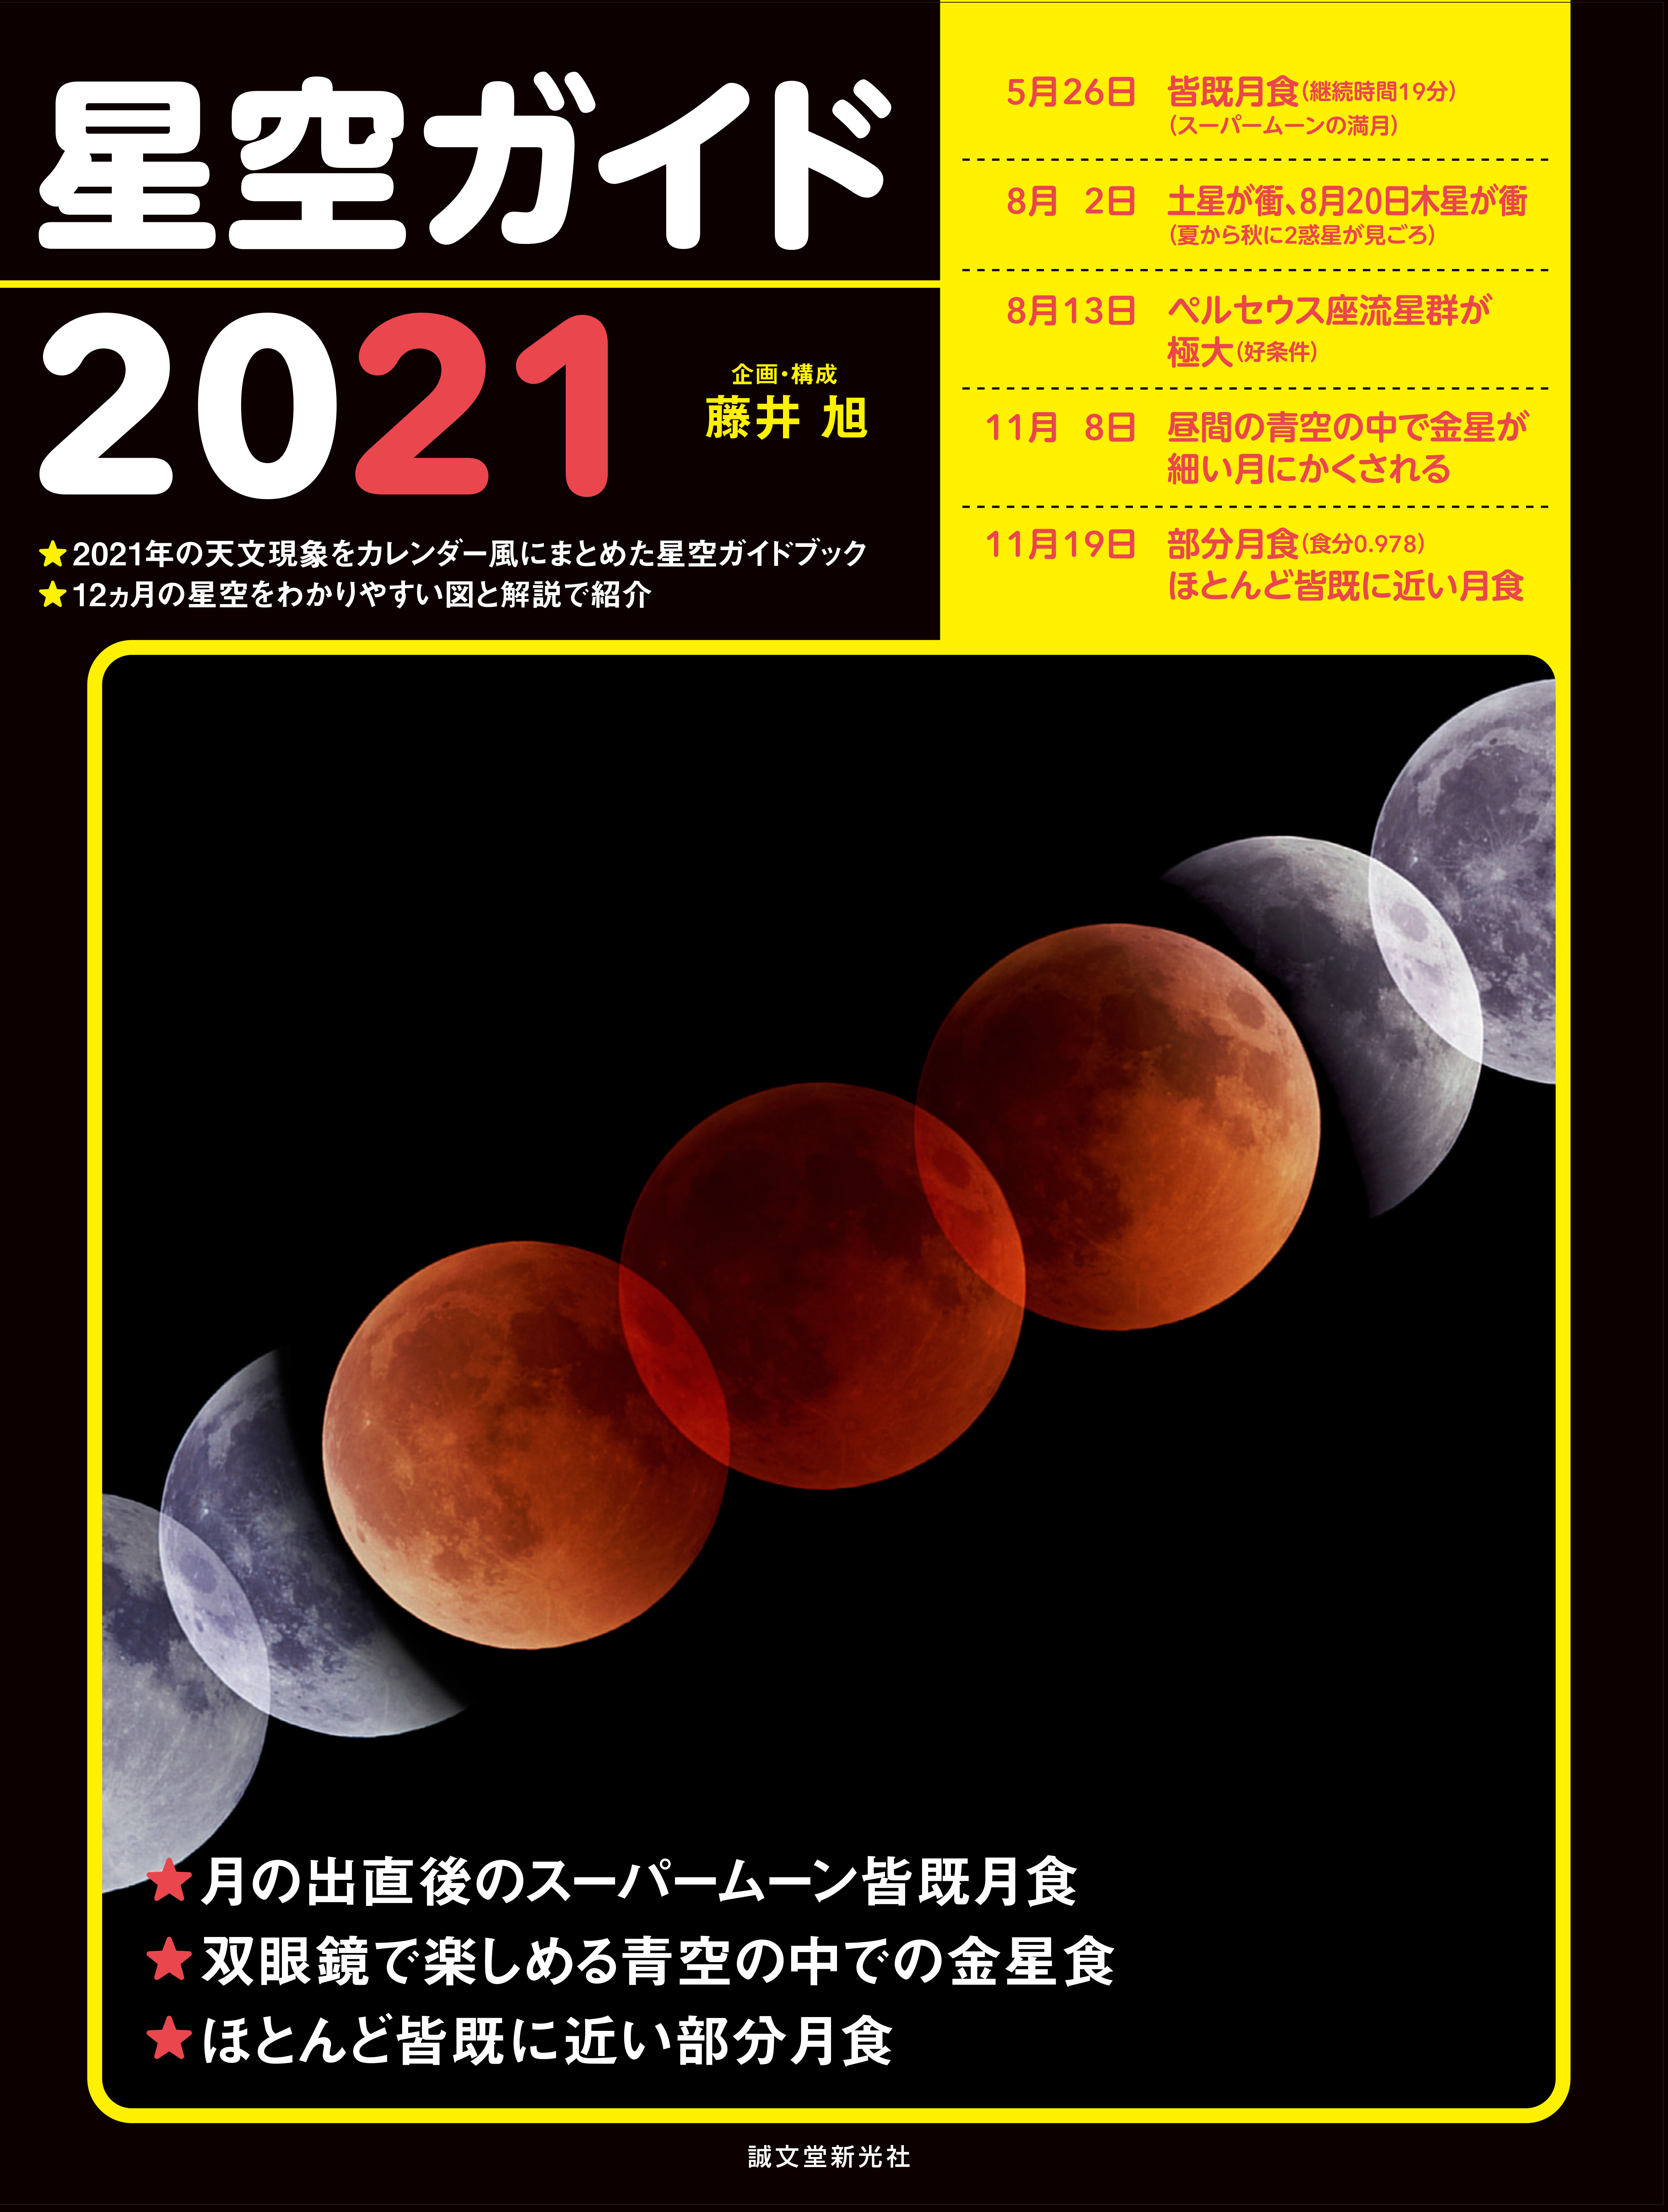 21年はスーパームーンの皆既月食が見られる 注目の天文現象がいつどこで起こるのかがわかる星空ガイドブック 株式会社誠文堂新光社のプレスリリース